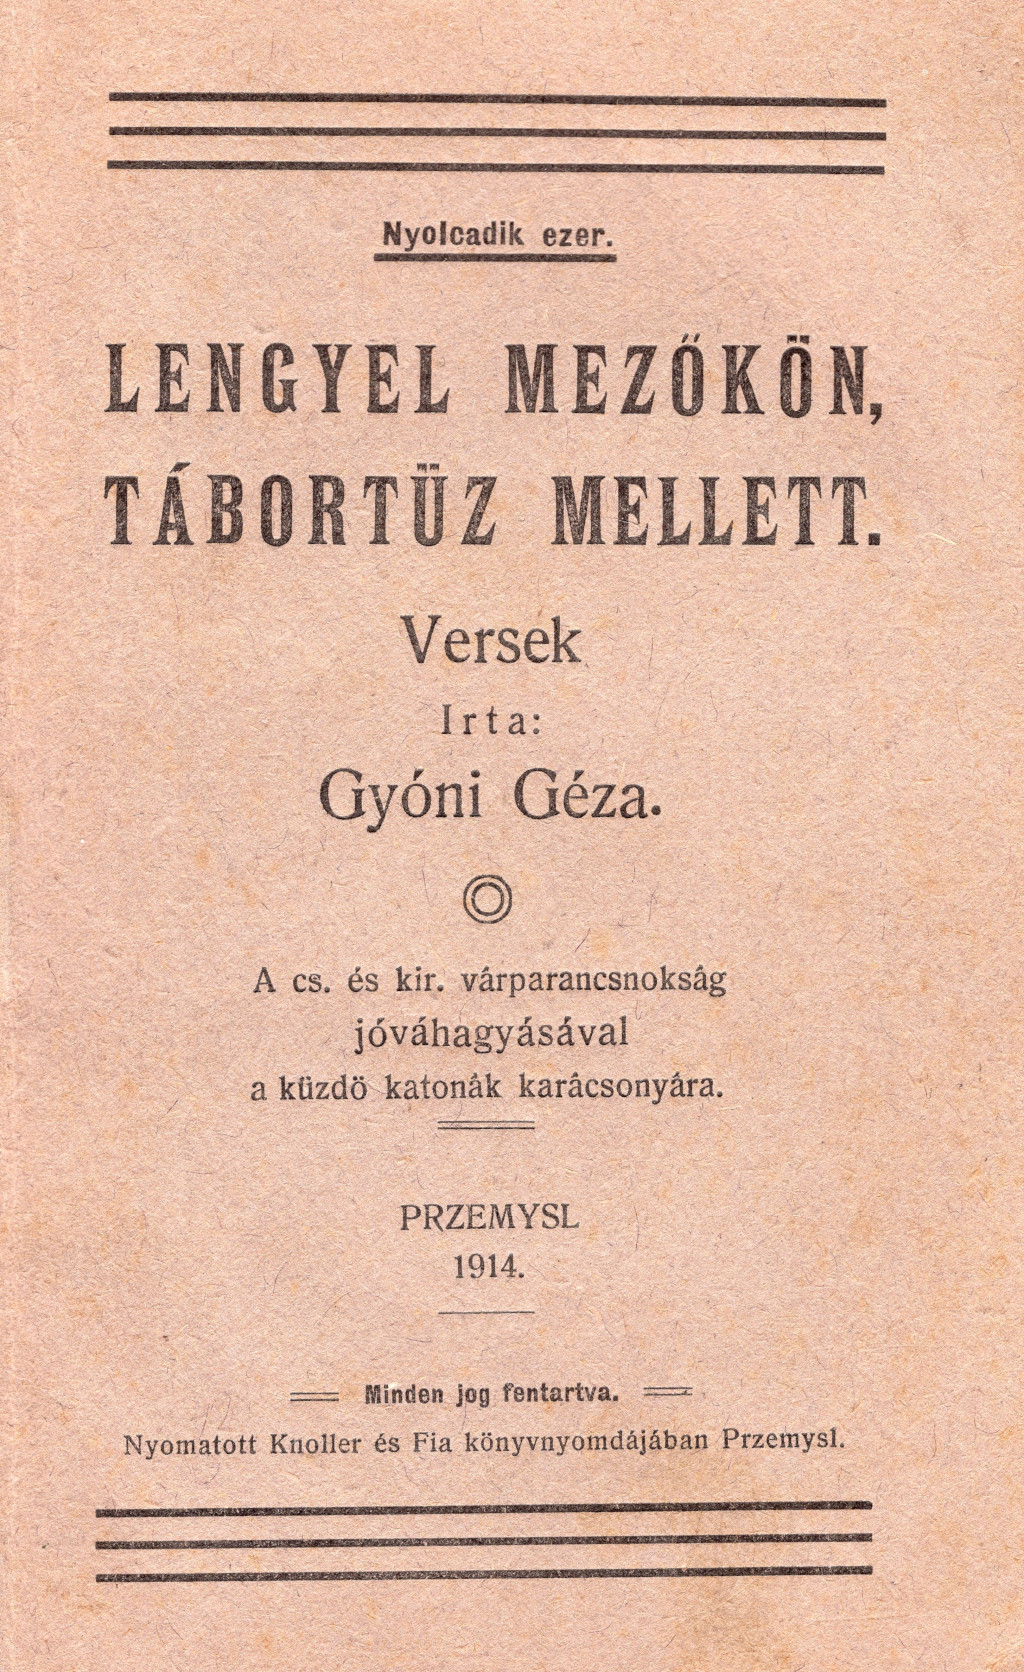 Gyóni Lengyel mezokon Przemyśl 1914